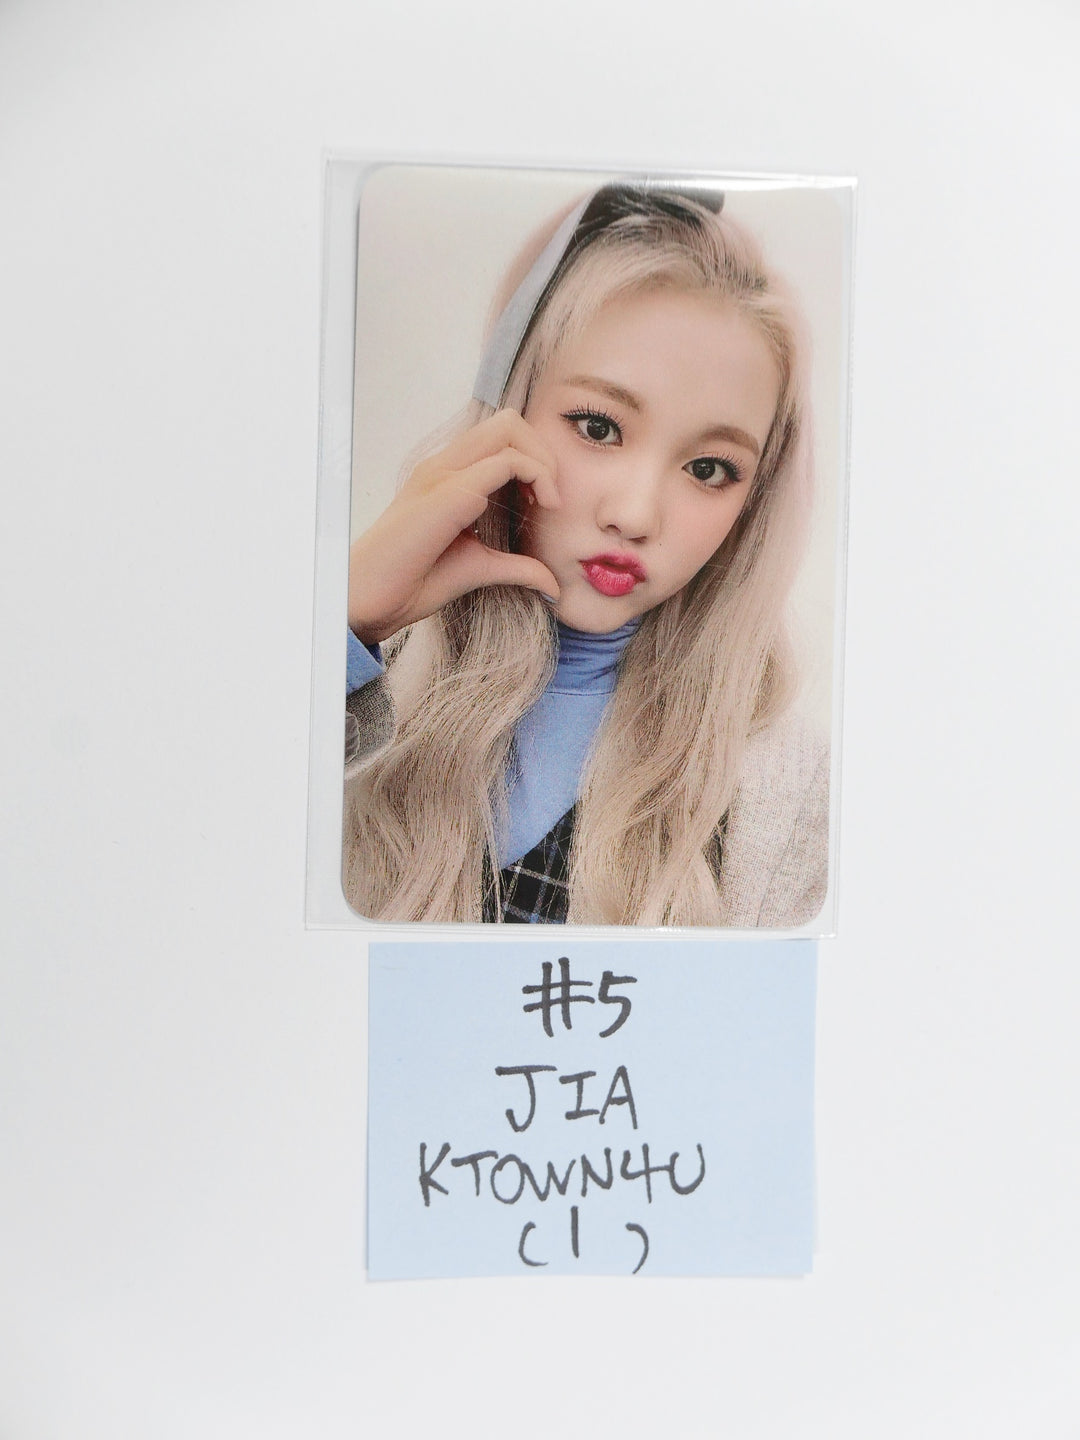 TRI.BE 'VENI VIDI VICI' 1st Mini - Ktown4U Fansign Event Photocard Round 2